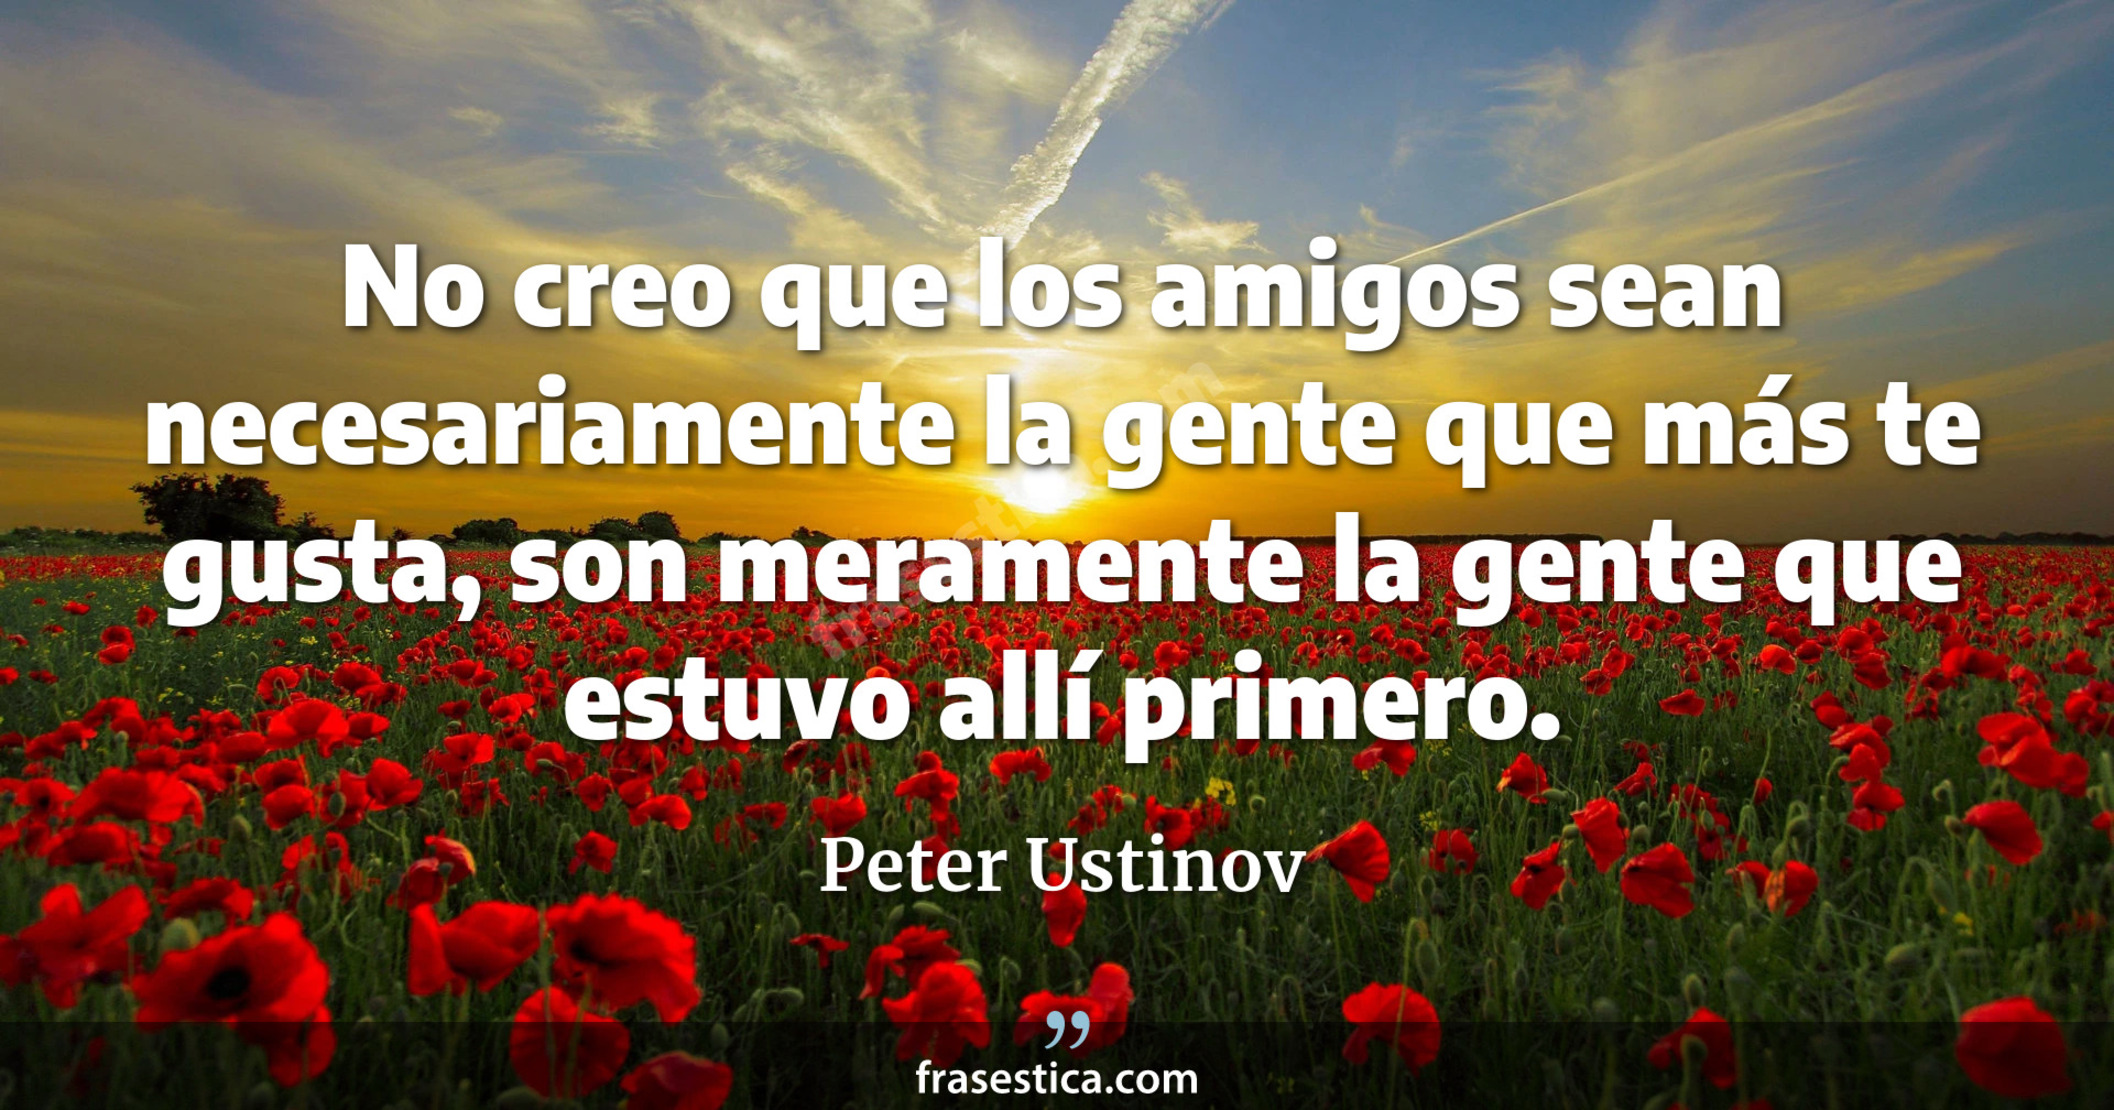 No creo que los amigos sean necesariamente la gente que más te gusta, son meramente la gente que estuvo allí primero. - Peter Ustinov